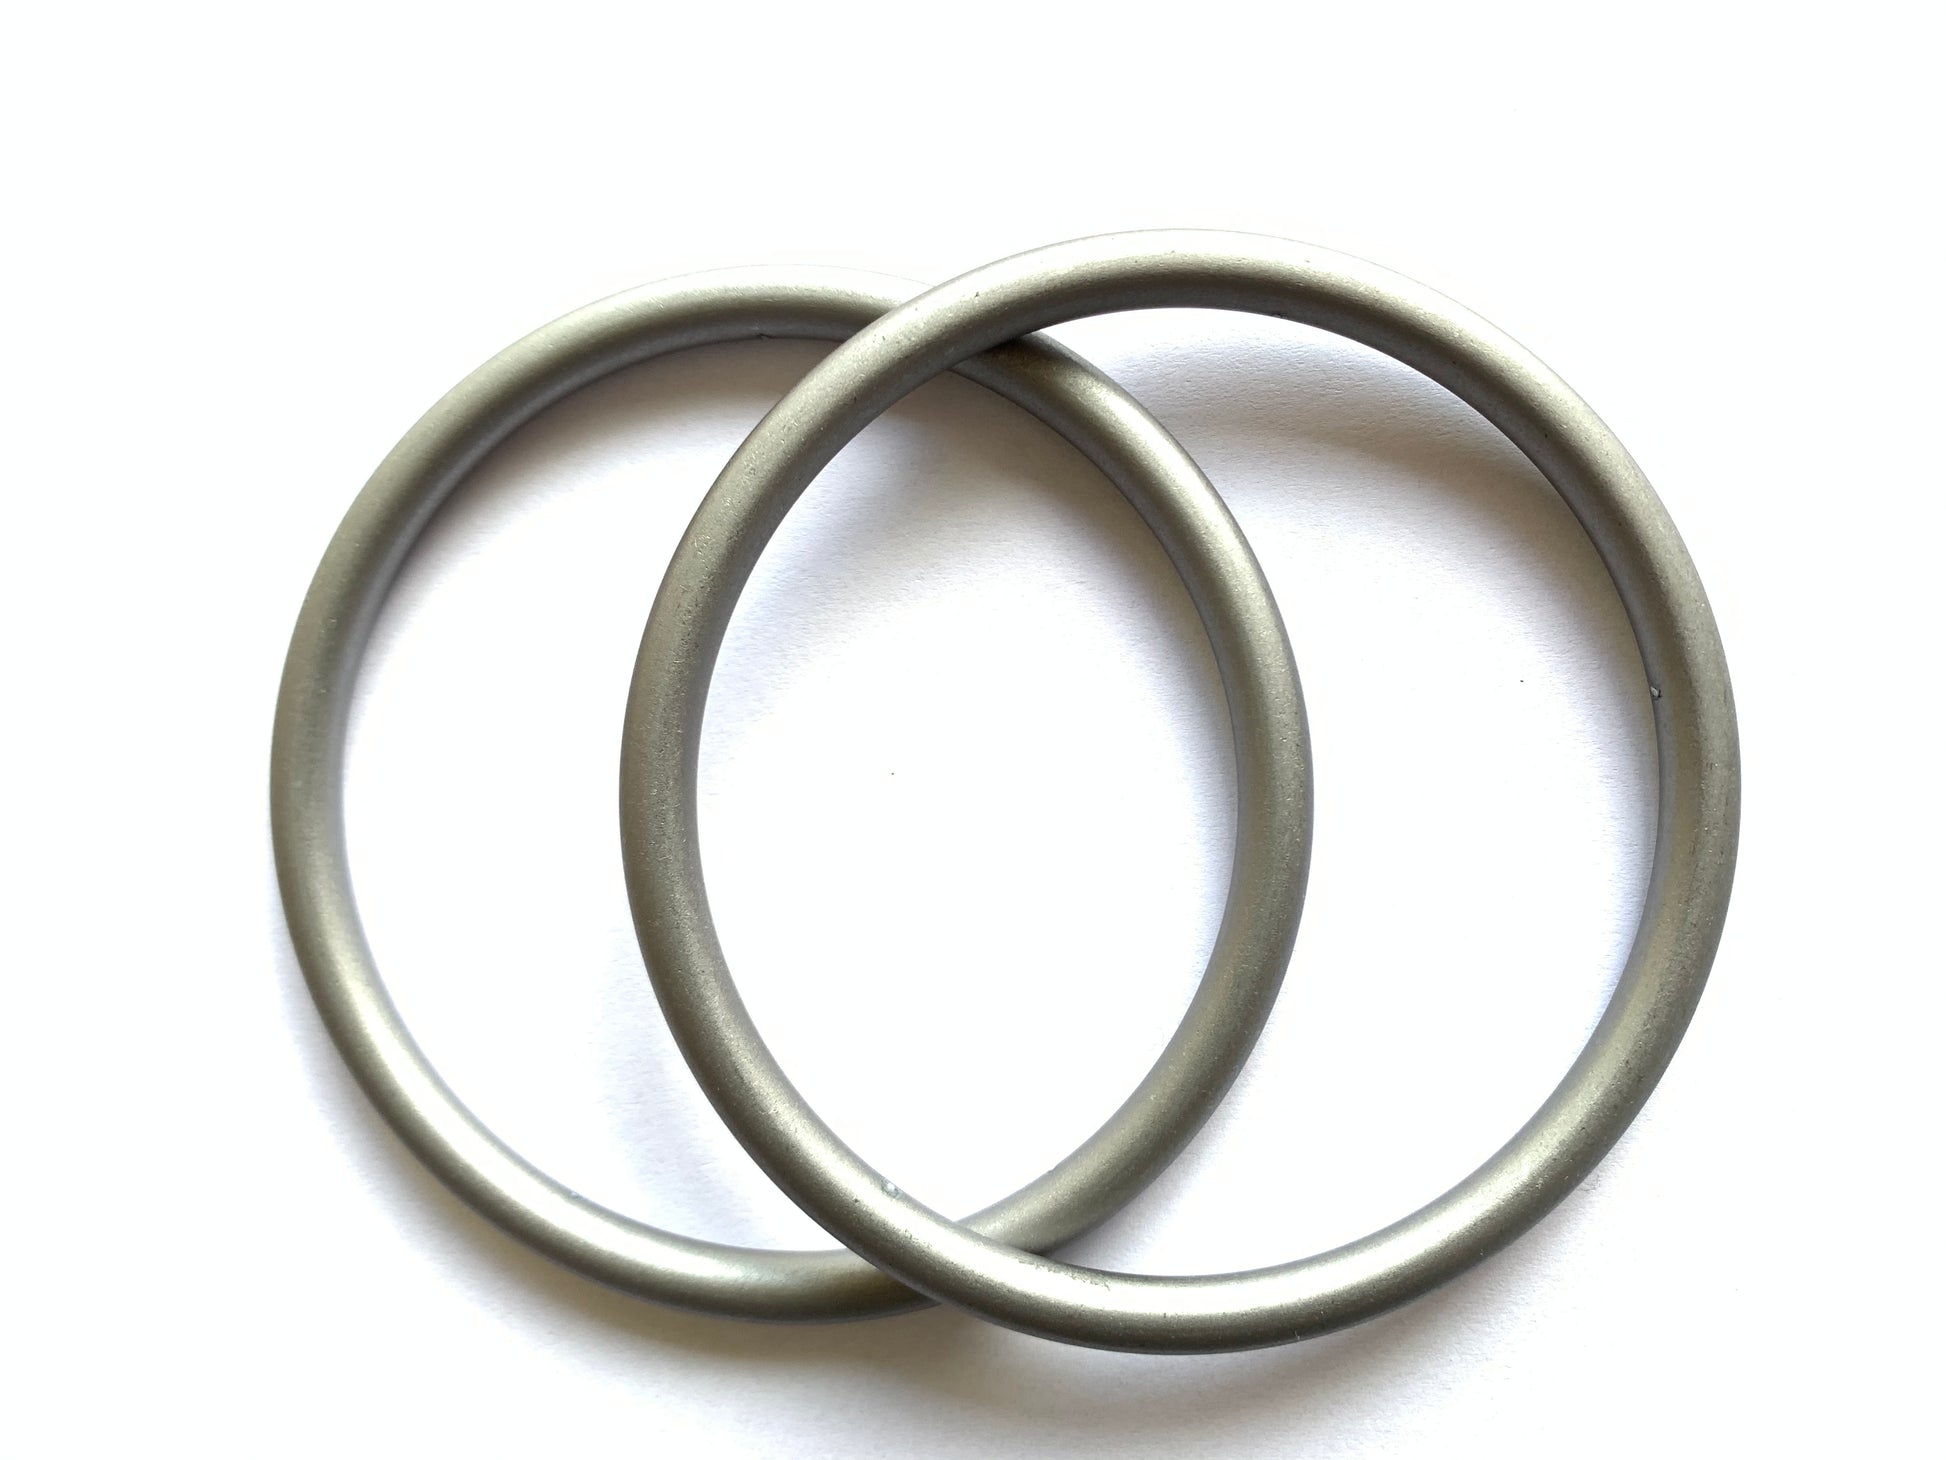 Farblich passende Ringe zu Deinem Lieblings-Tragetuch - ADViKiDS